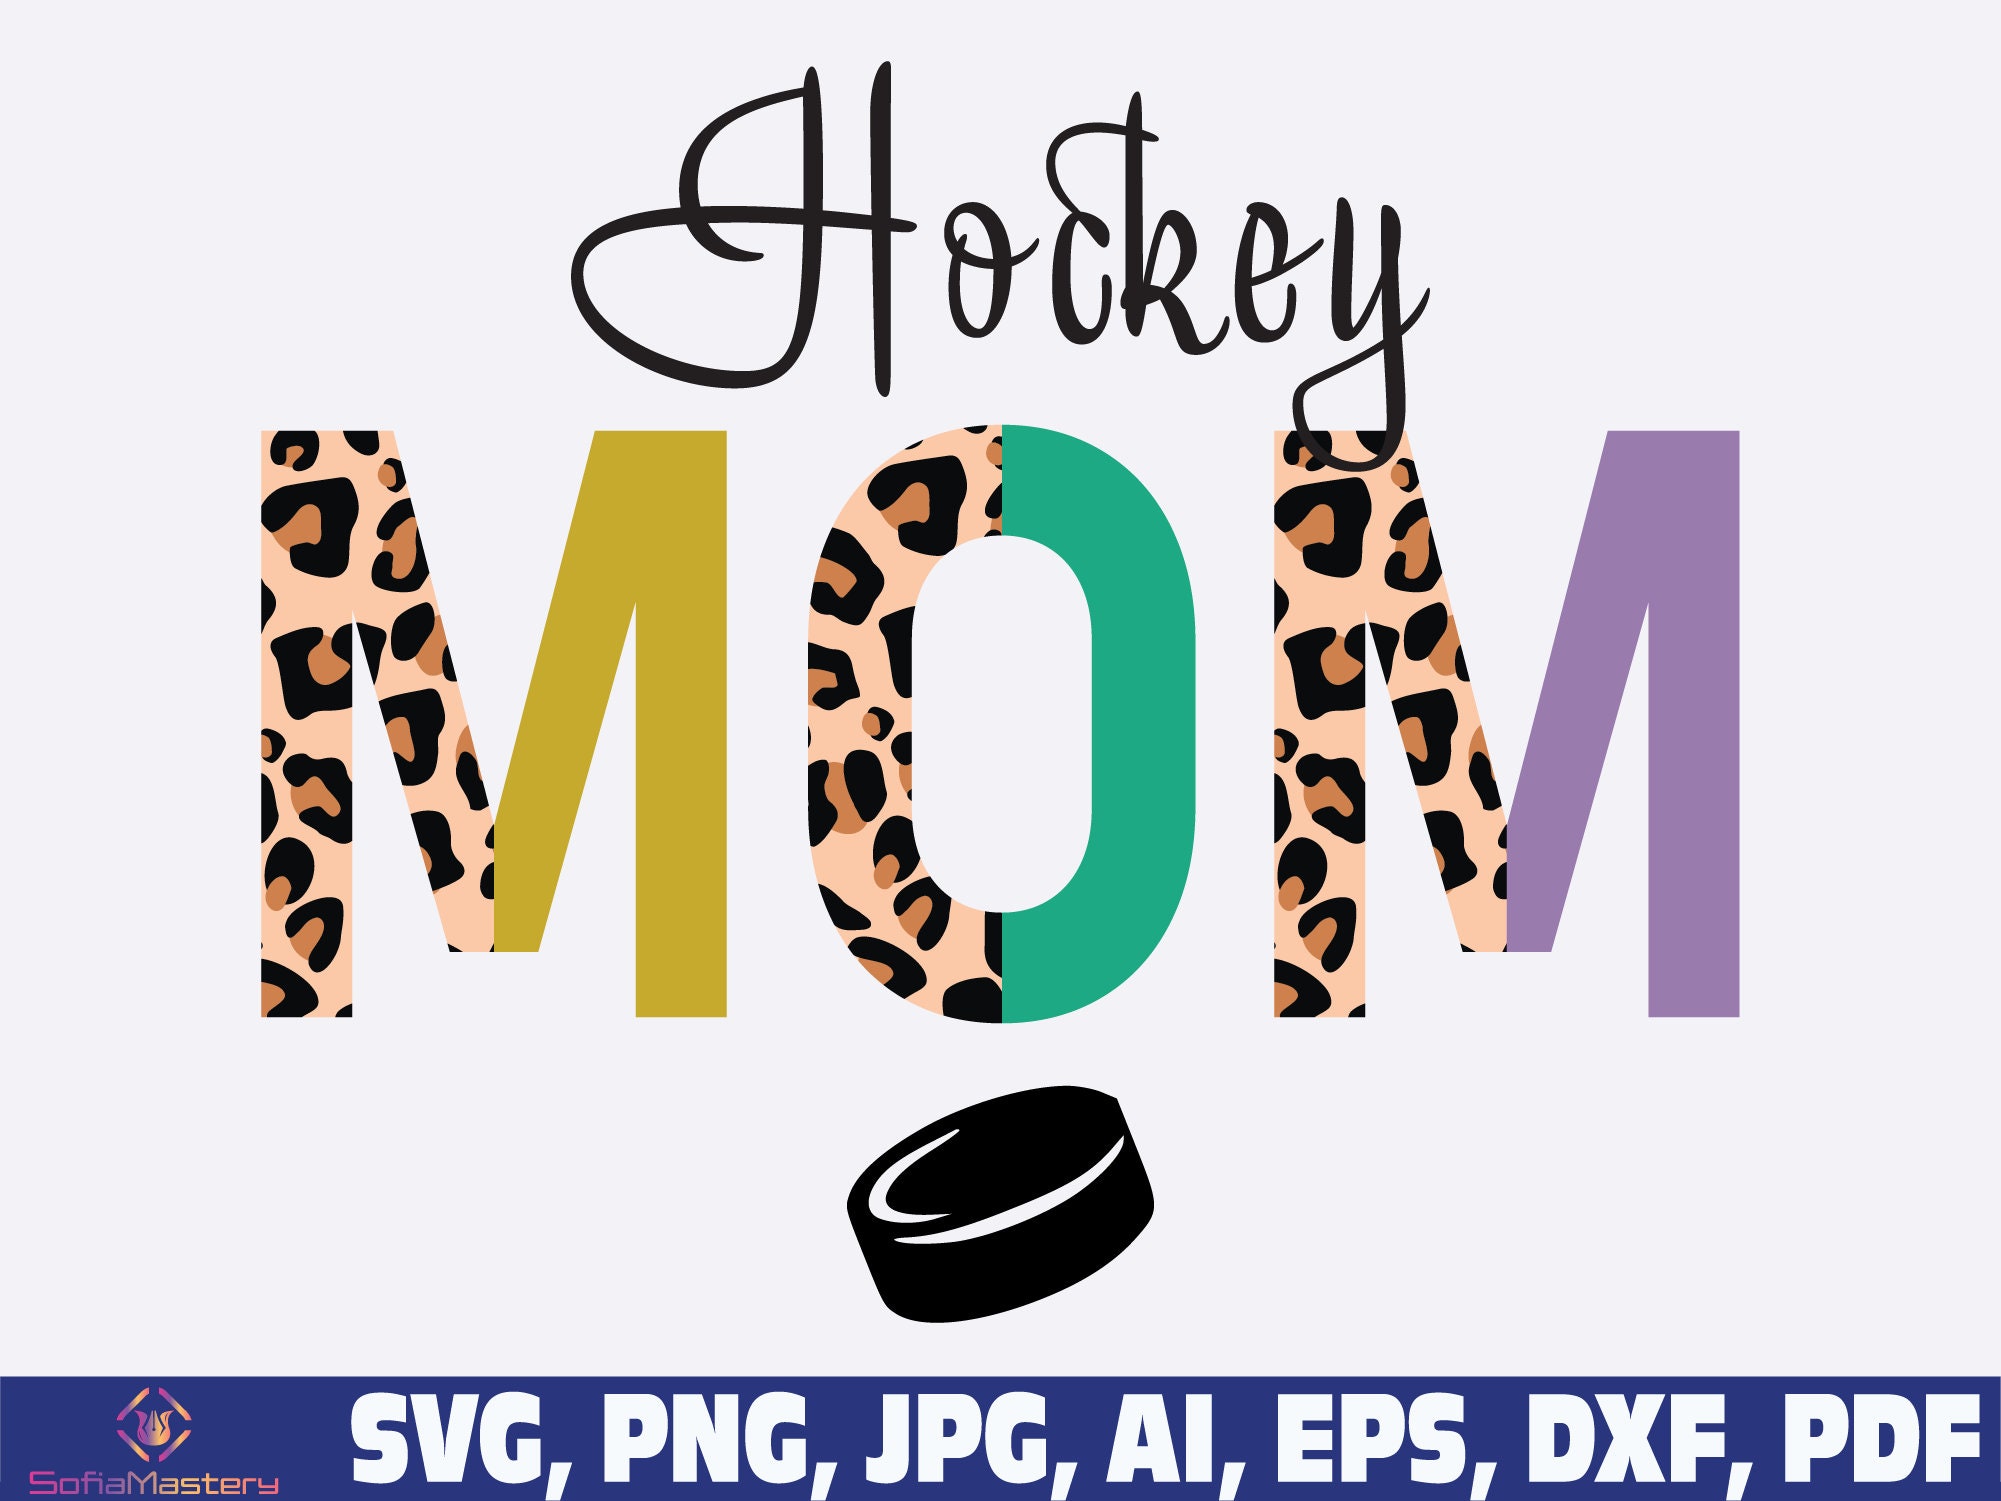 Vegas Golden Knights, Hockey Mom, Misfits, Hawks, 4 - Cartoon PNG